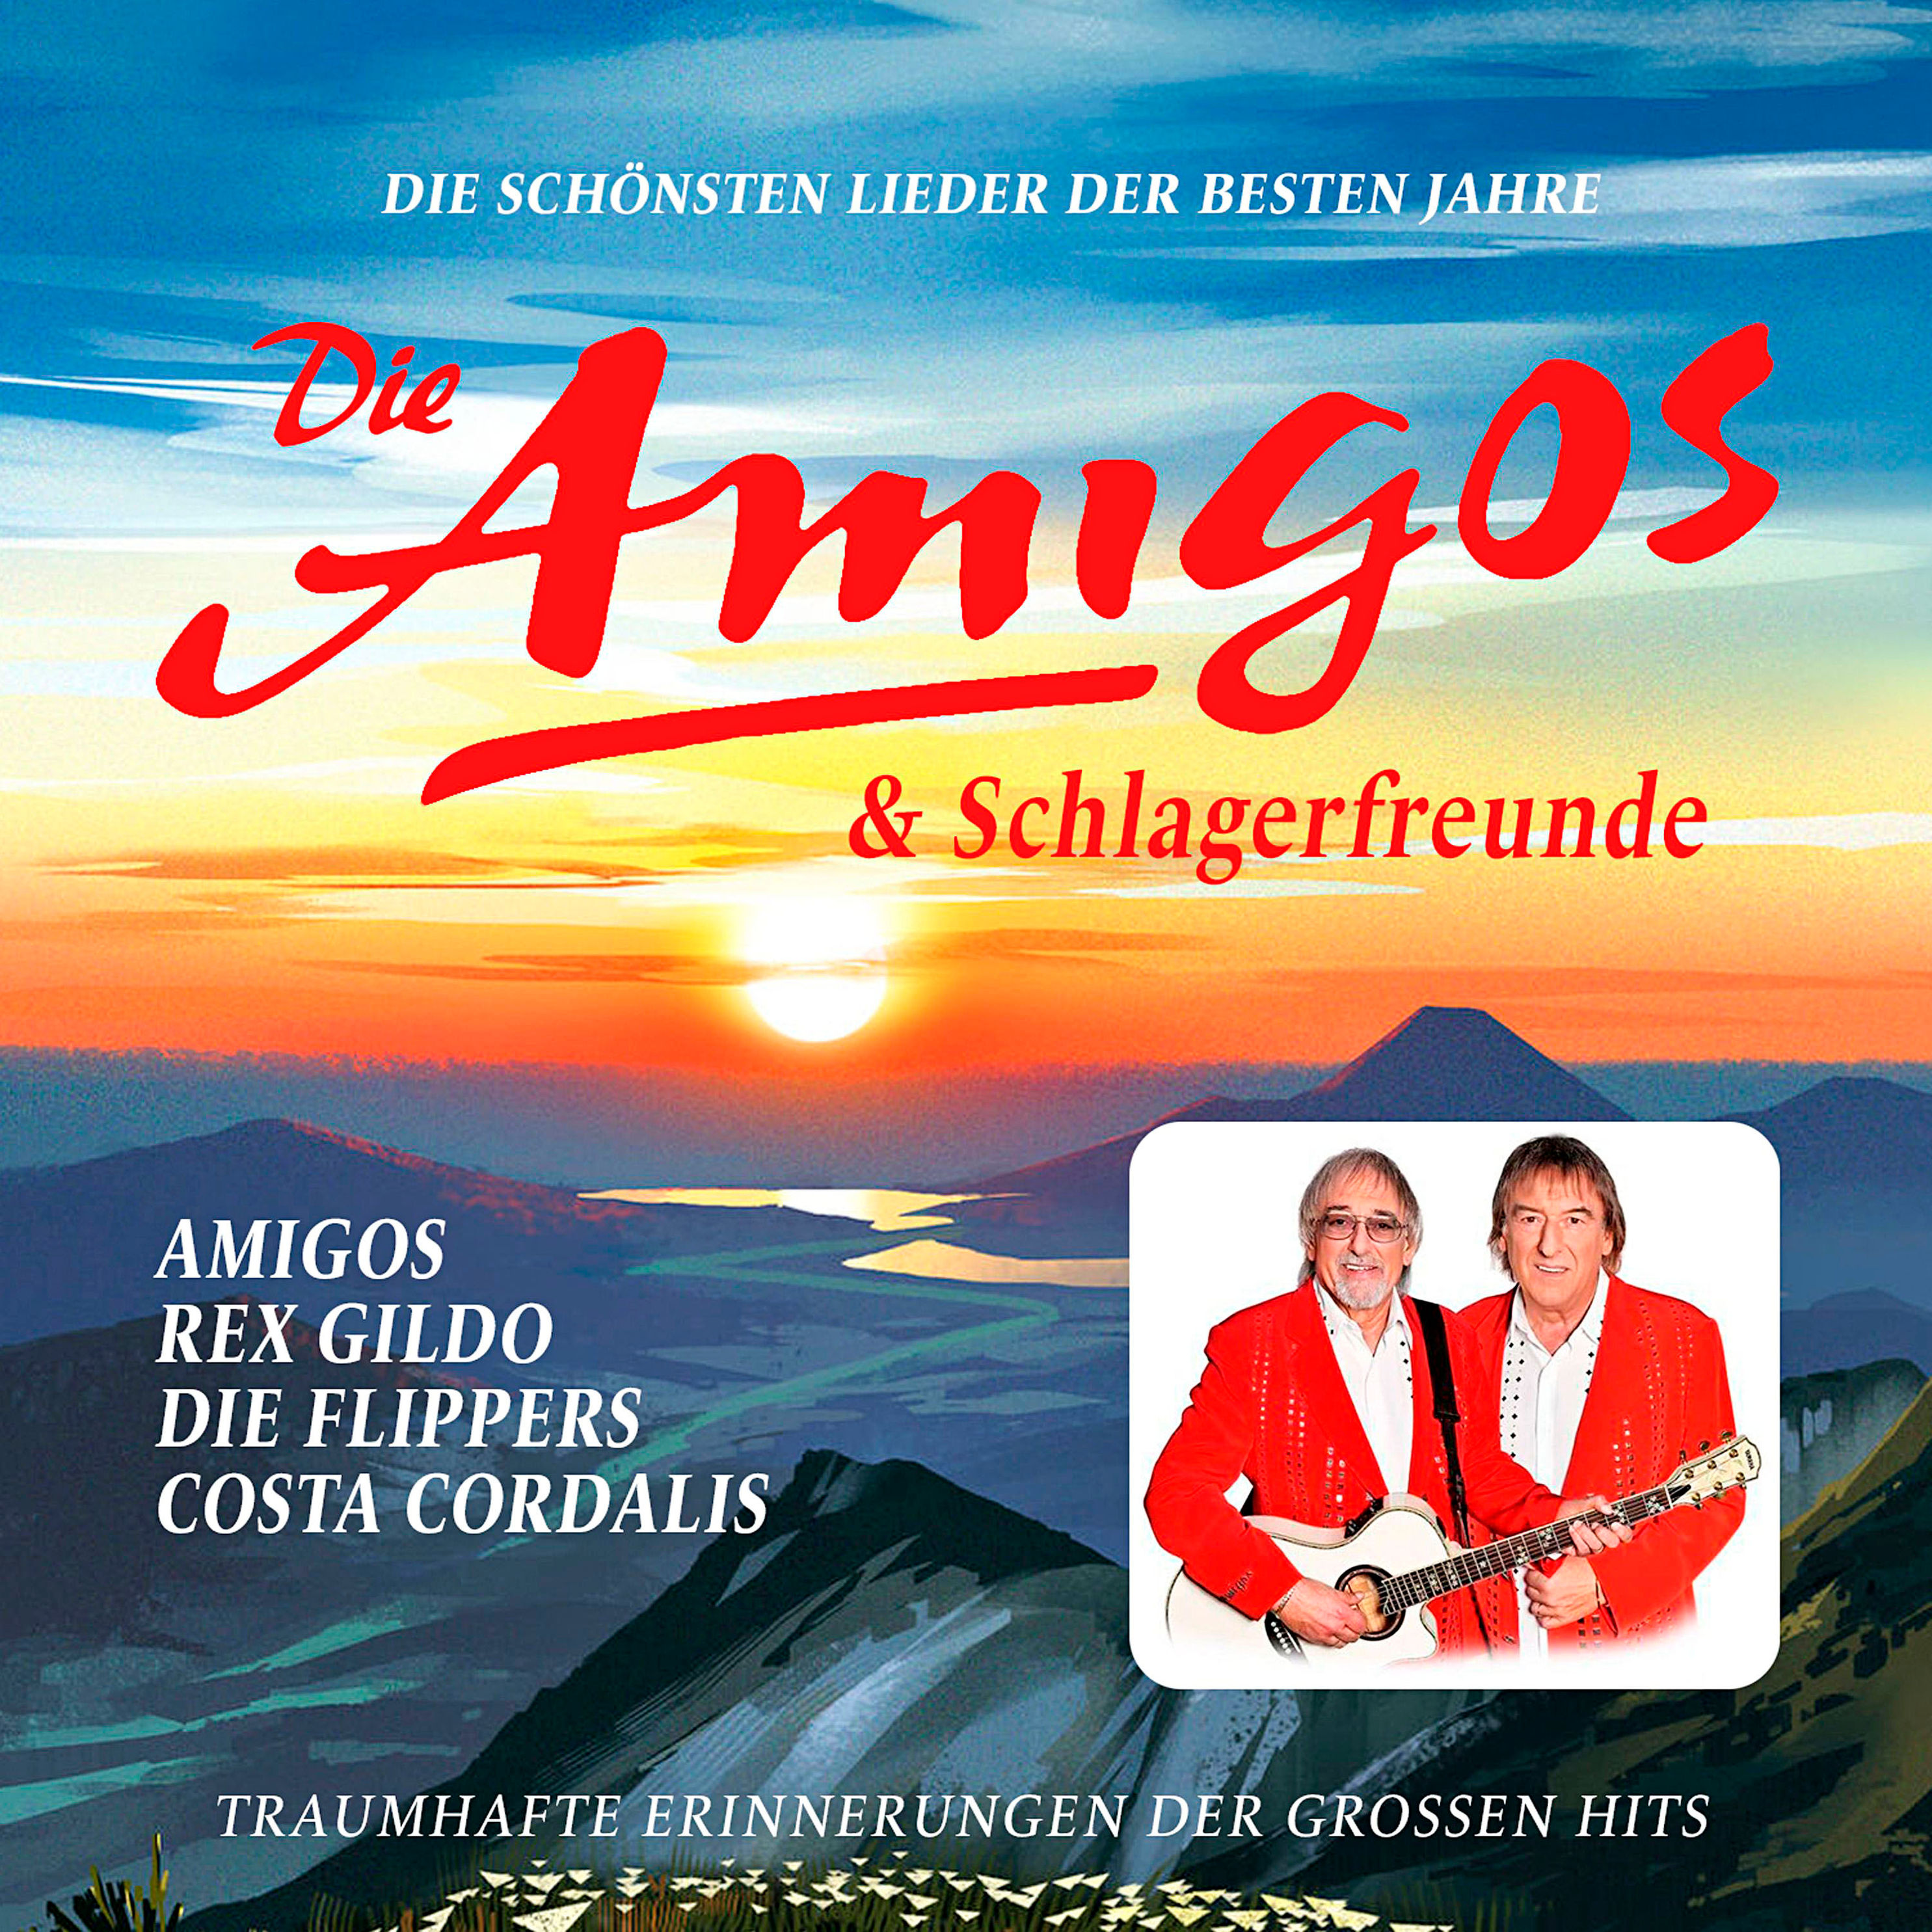 Die schönsten Lieder der besten Jahre von Die Amigos & Schlagerfreunde |  Weltbild.at